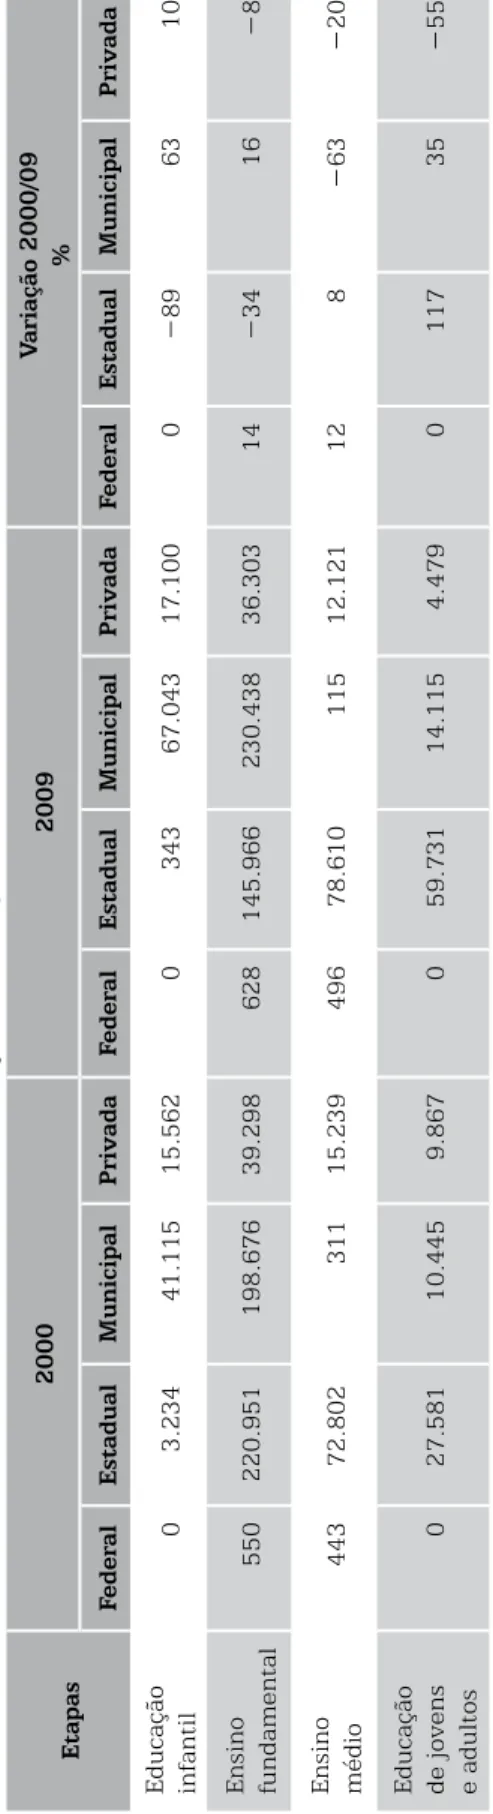 Tabela 2 – Matrículas por etapas e modalidades da educação básica, segundo as dependências administrativas – Mato Grosso do Sul – 2000/09 Etapas20002009Variação 2000/09% FederalEstadualMunicipalPrivadaFederalEstadualMunicipalPrivadaFederalEstadualMunicipal